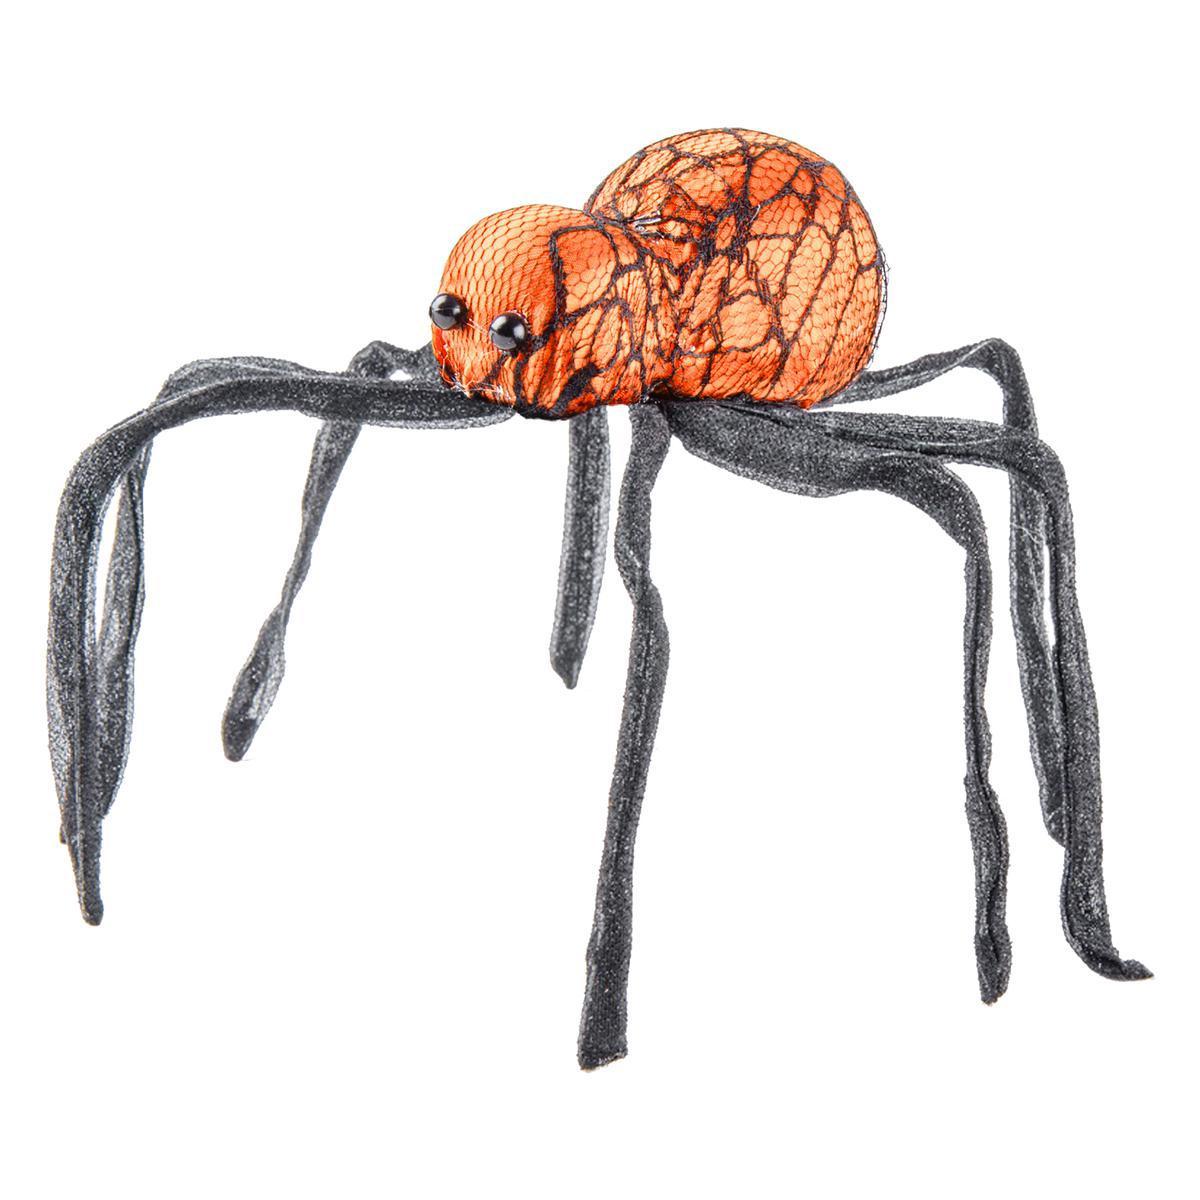 Araignée géante en polystyrène - 58 x 11 x 5,5 cm - Différents coloris